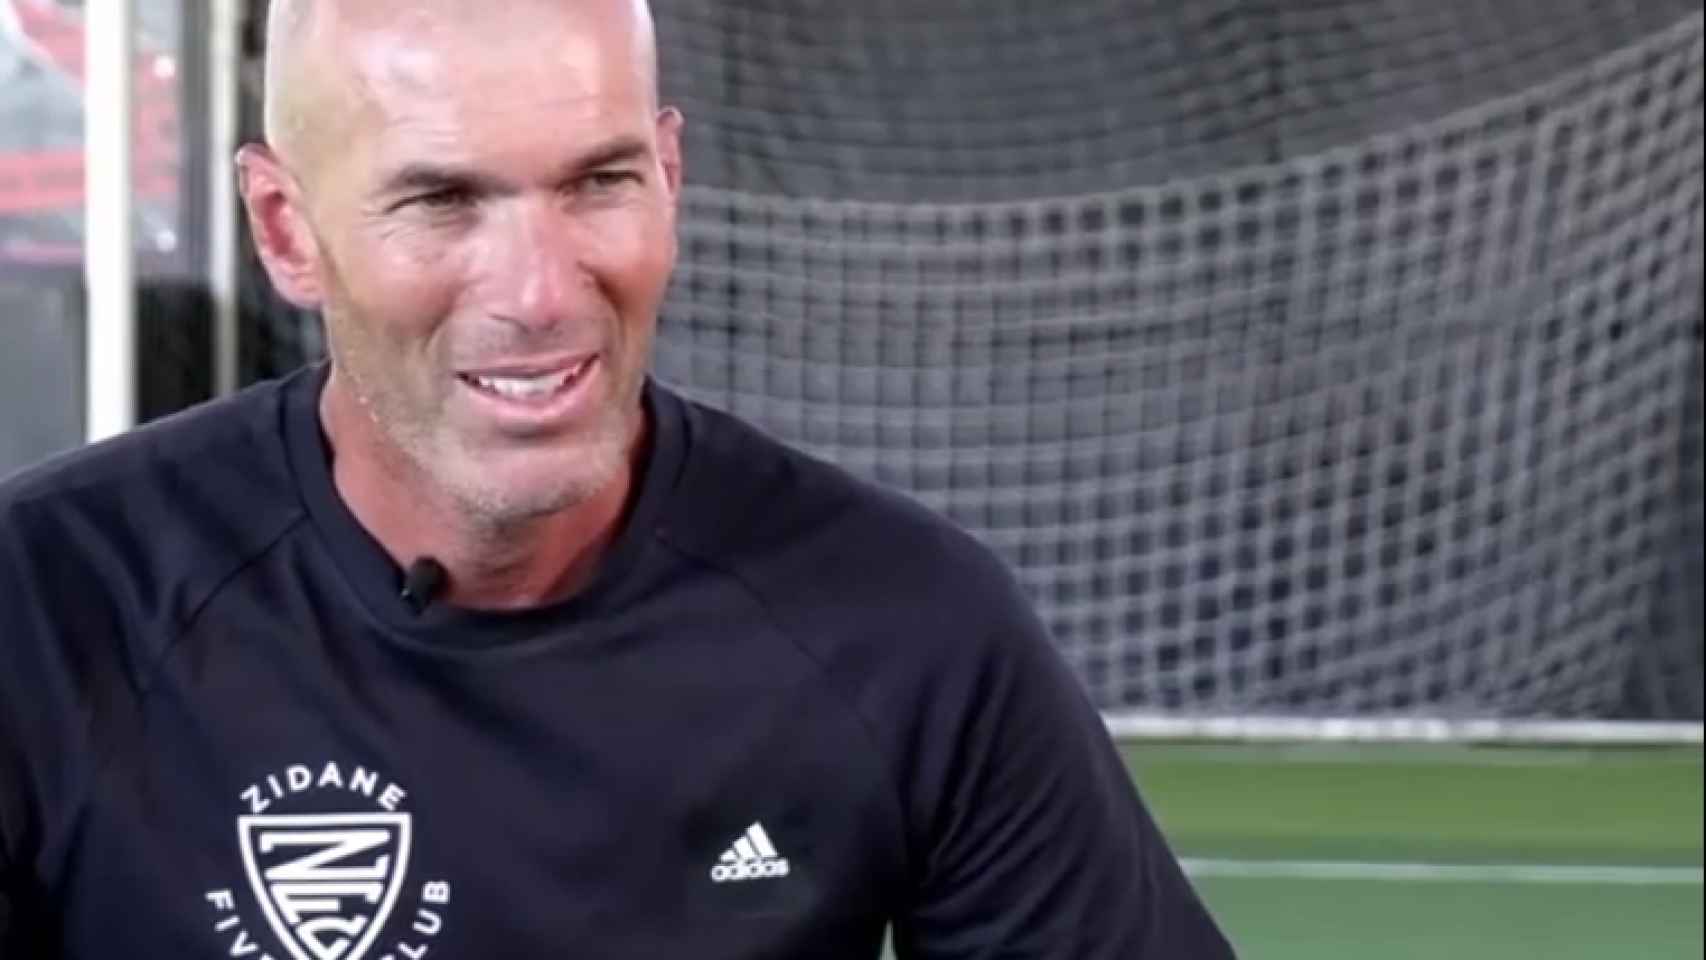 Zinedine Zidane, en la entrevista en Telefoot